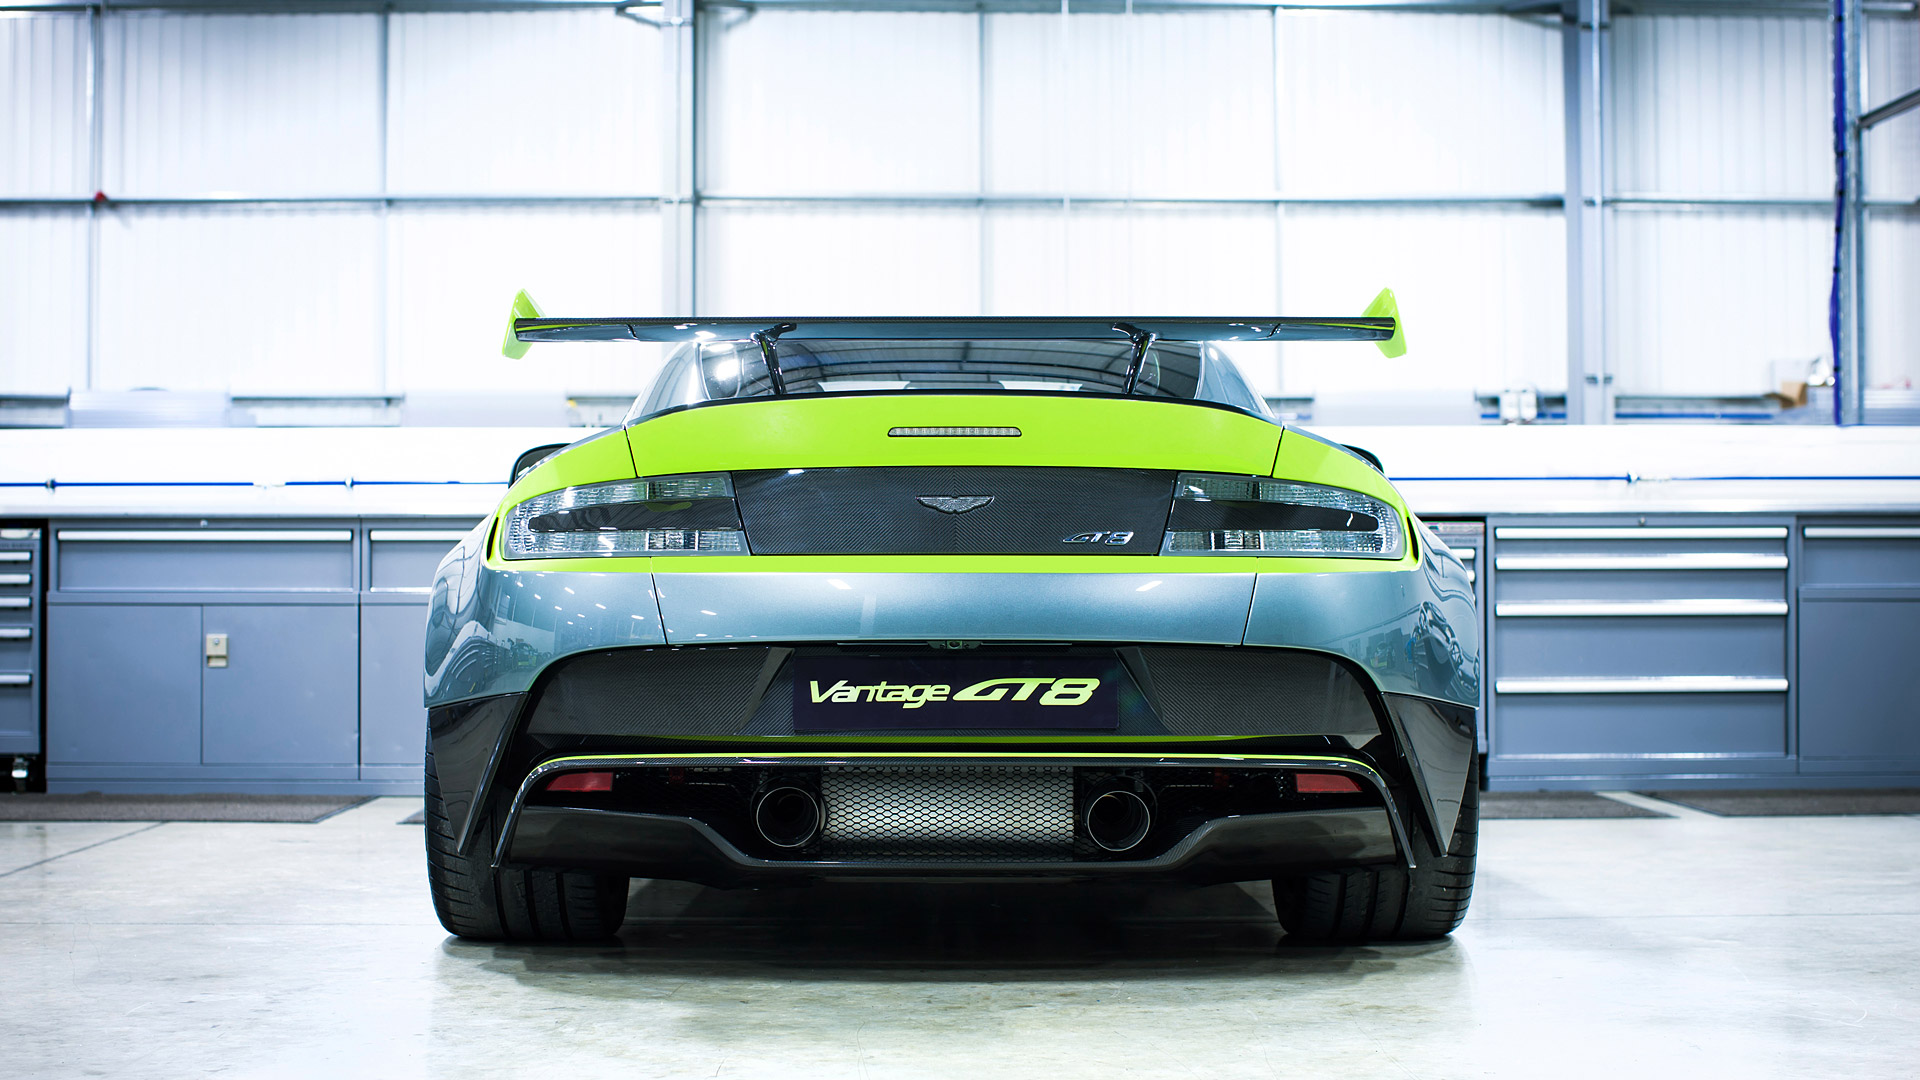  2017 Aston Martin Vantage GT8= Wallpaper.